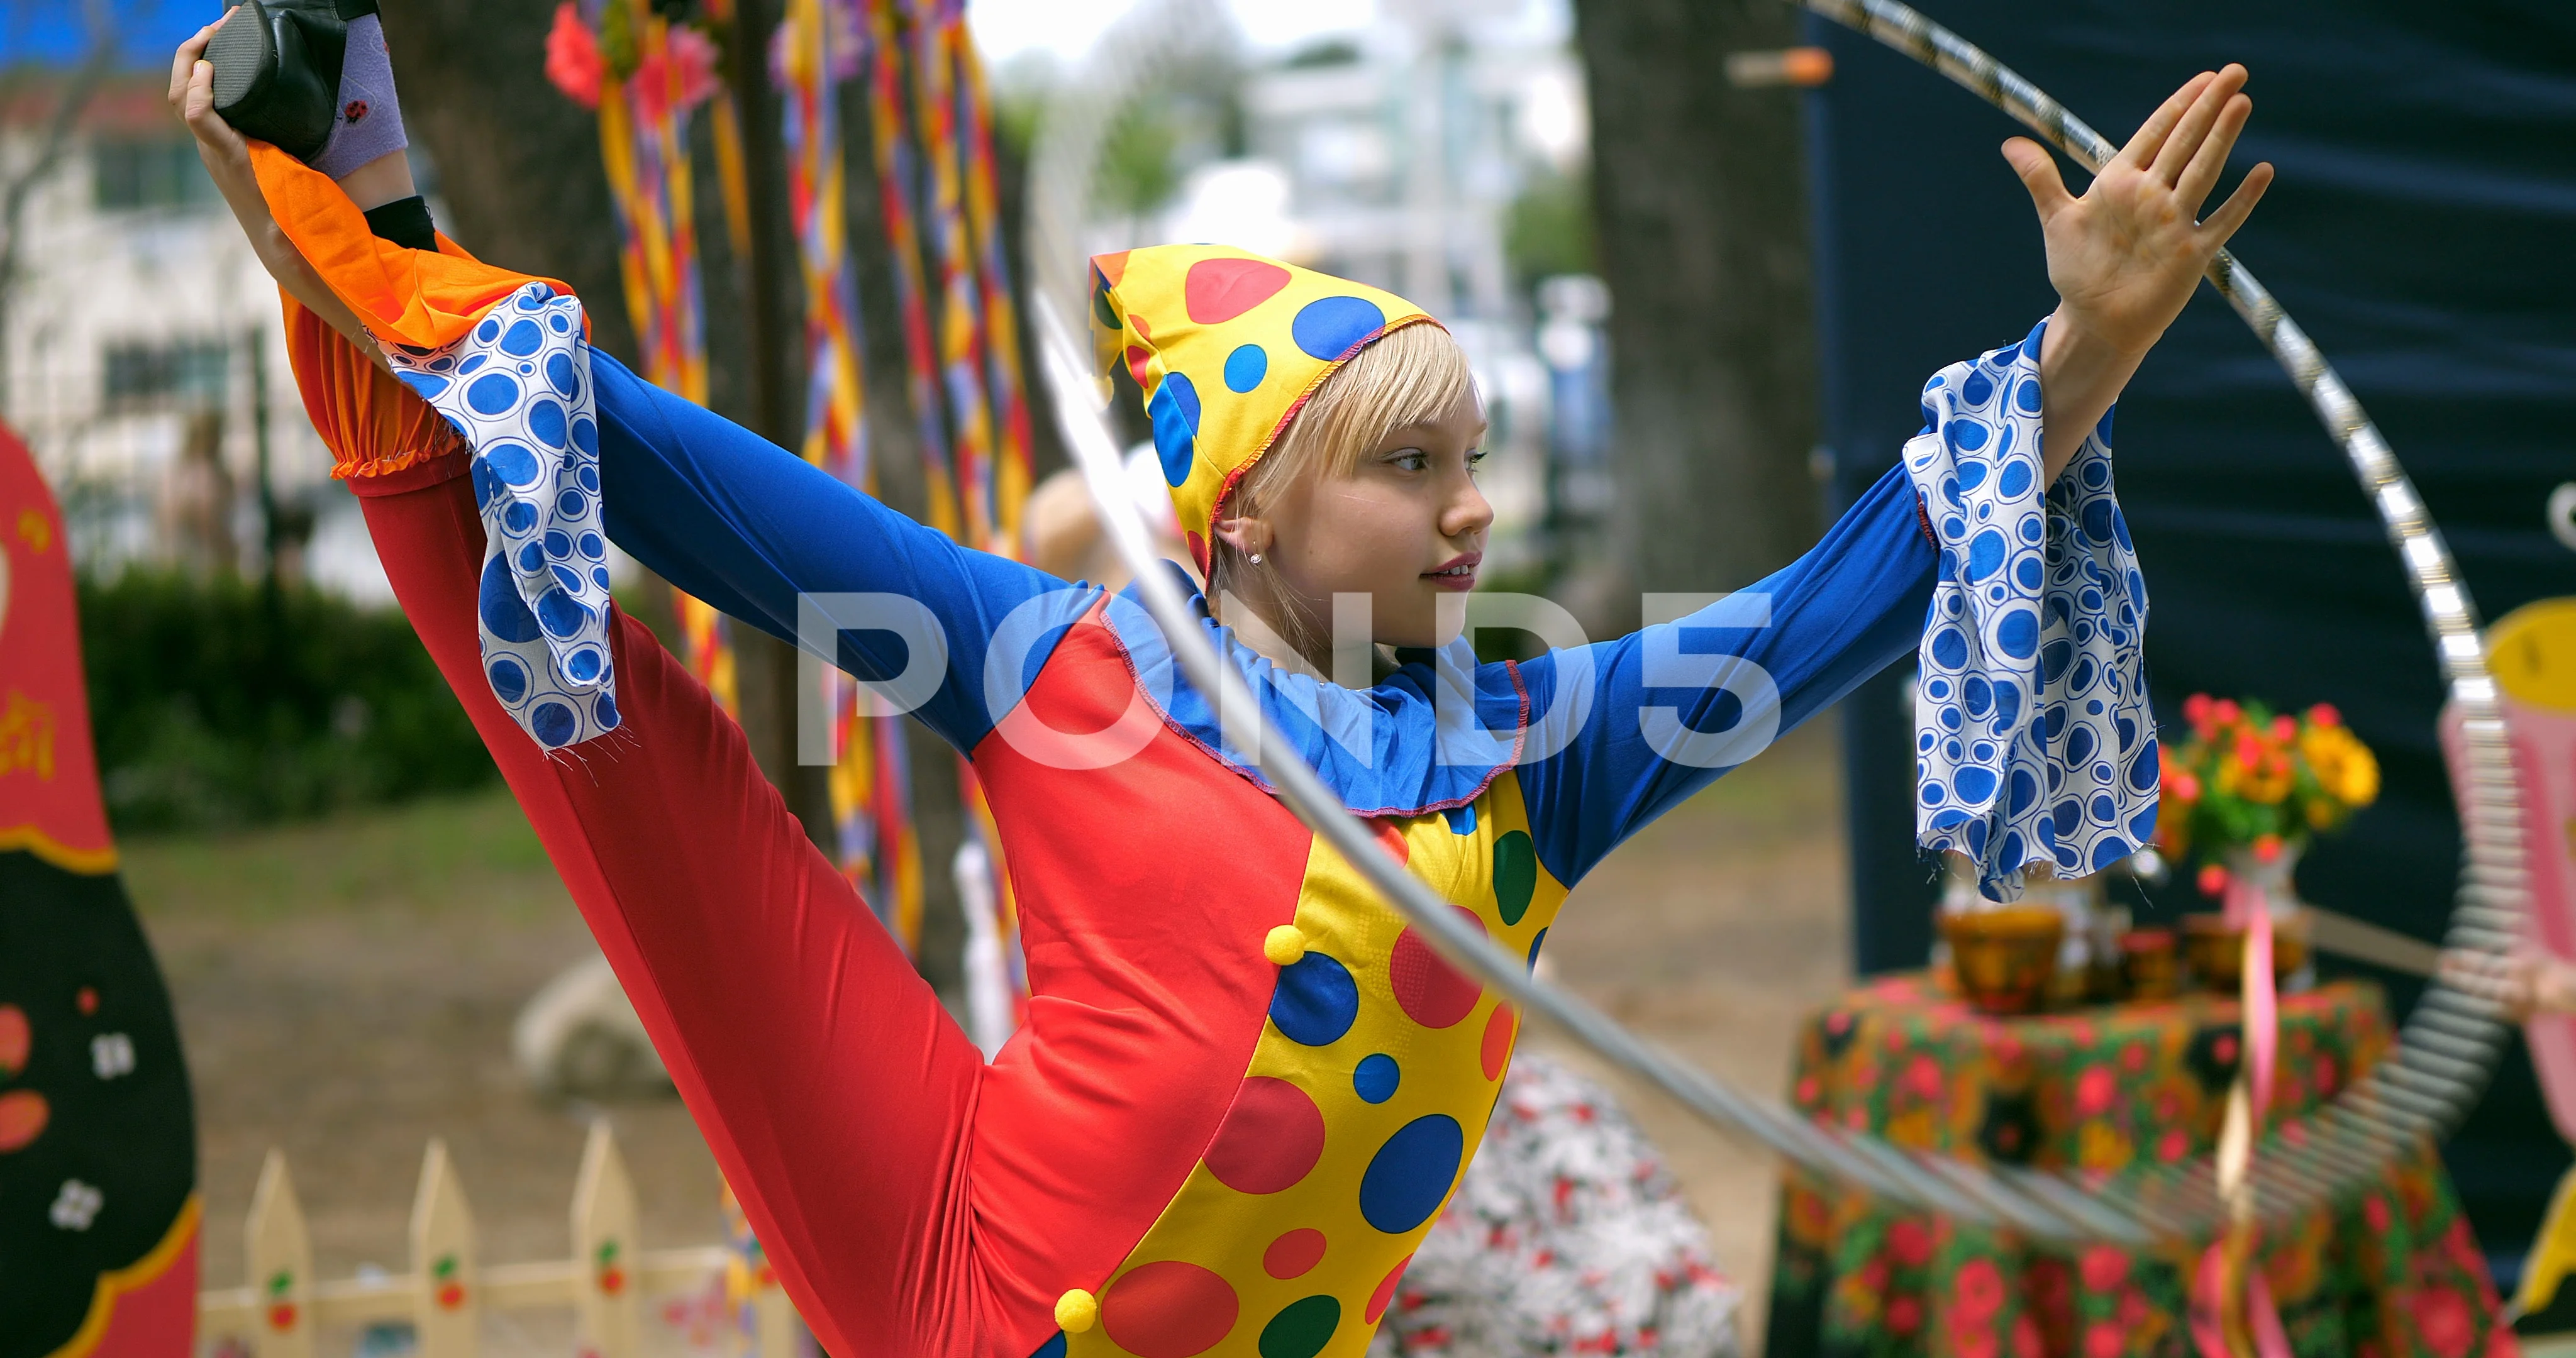 female circus clowns